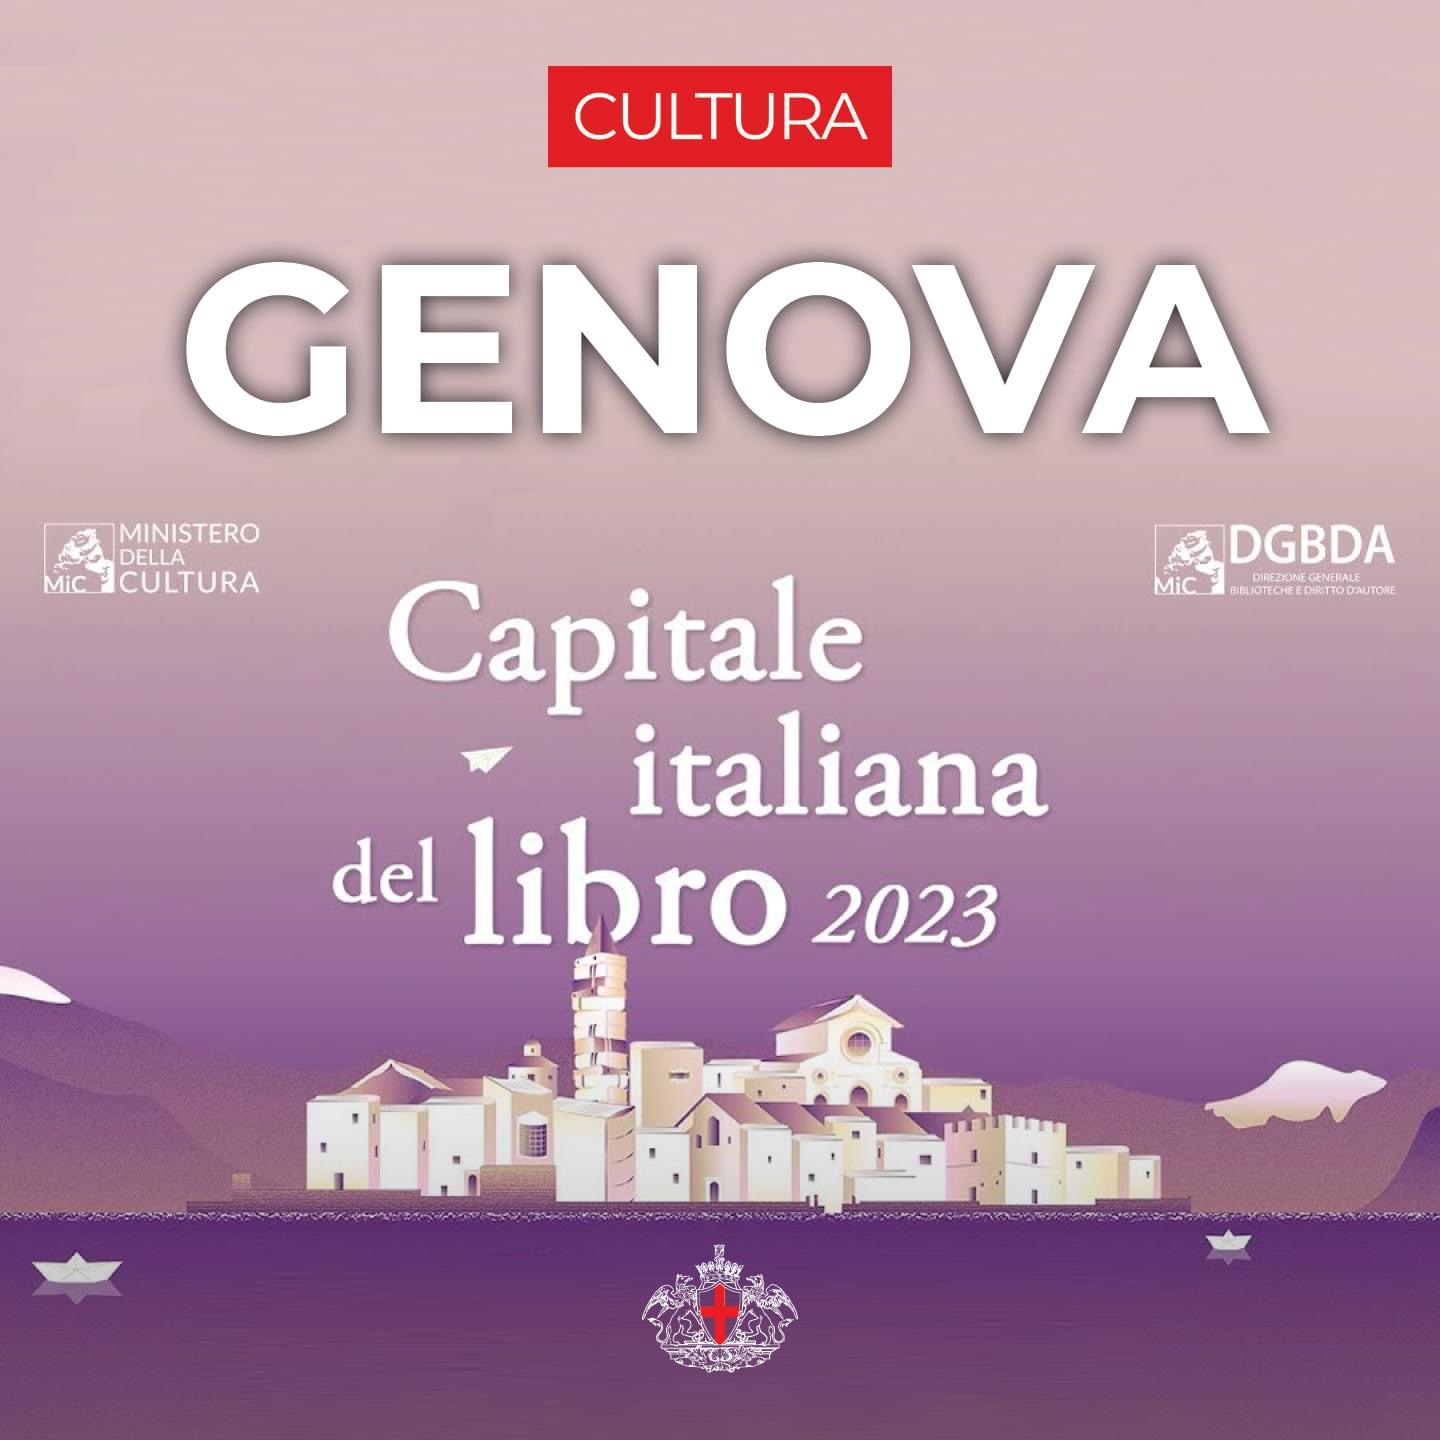 Genova capitale del libro 2023 